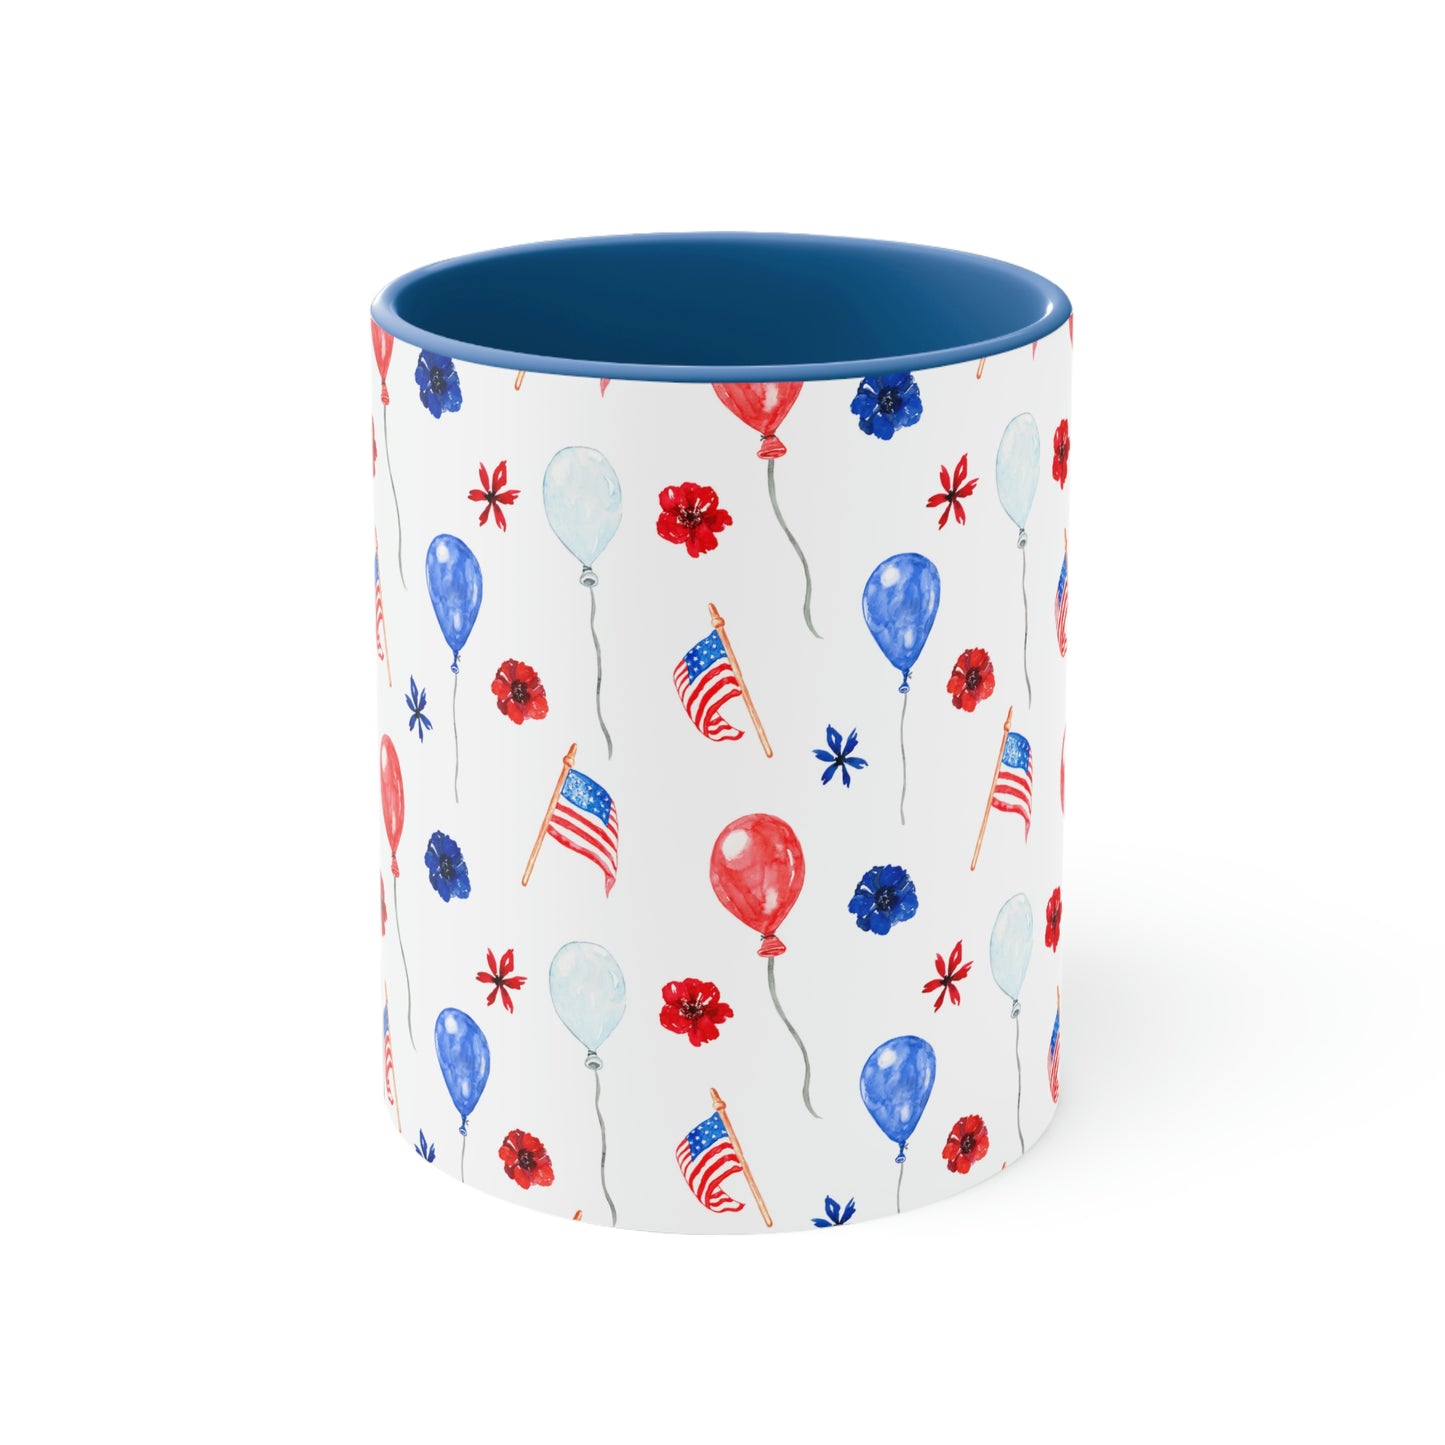 American Flags and Balloons Coffee Mug, 11oz